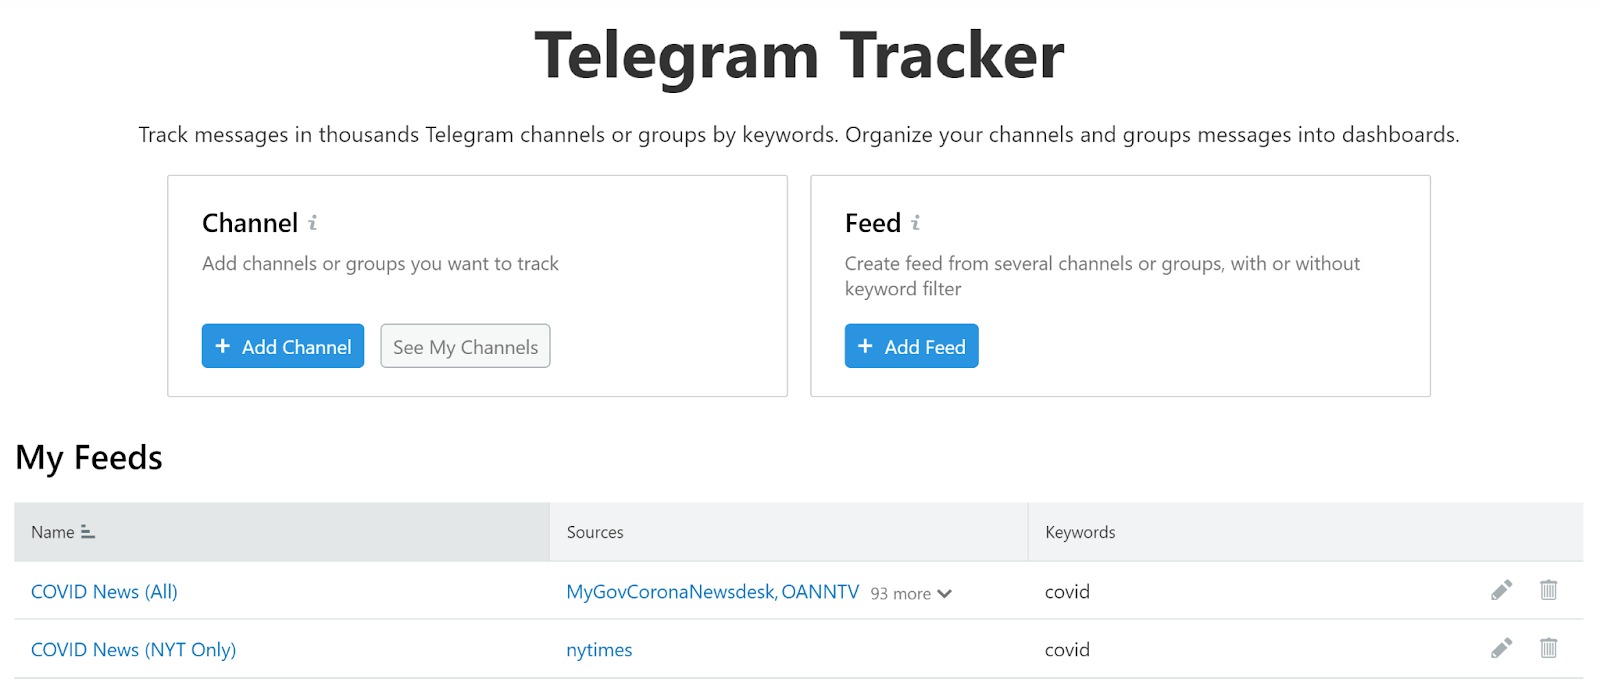 Telegram Tracker image 1